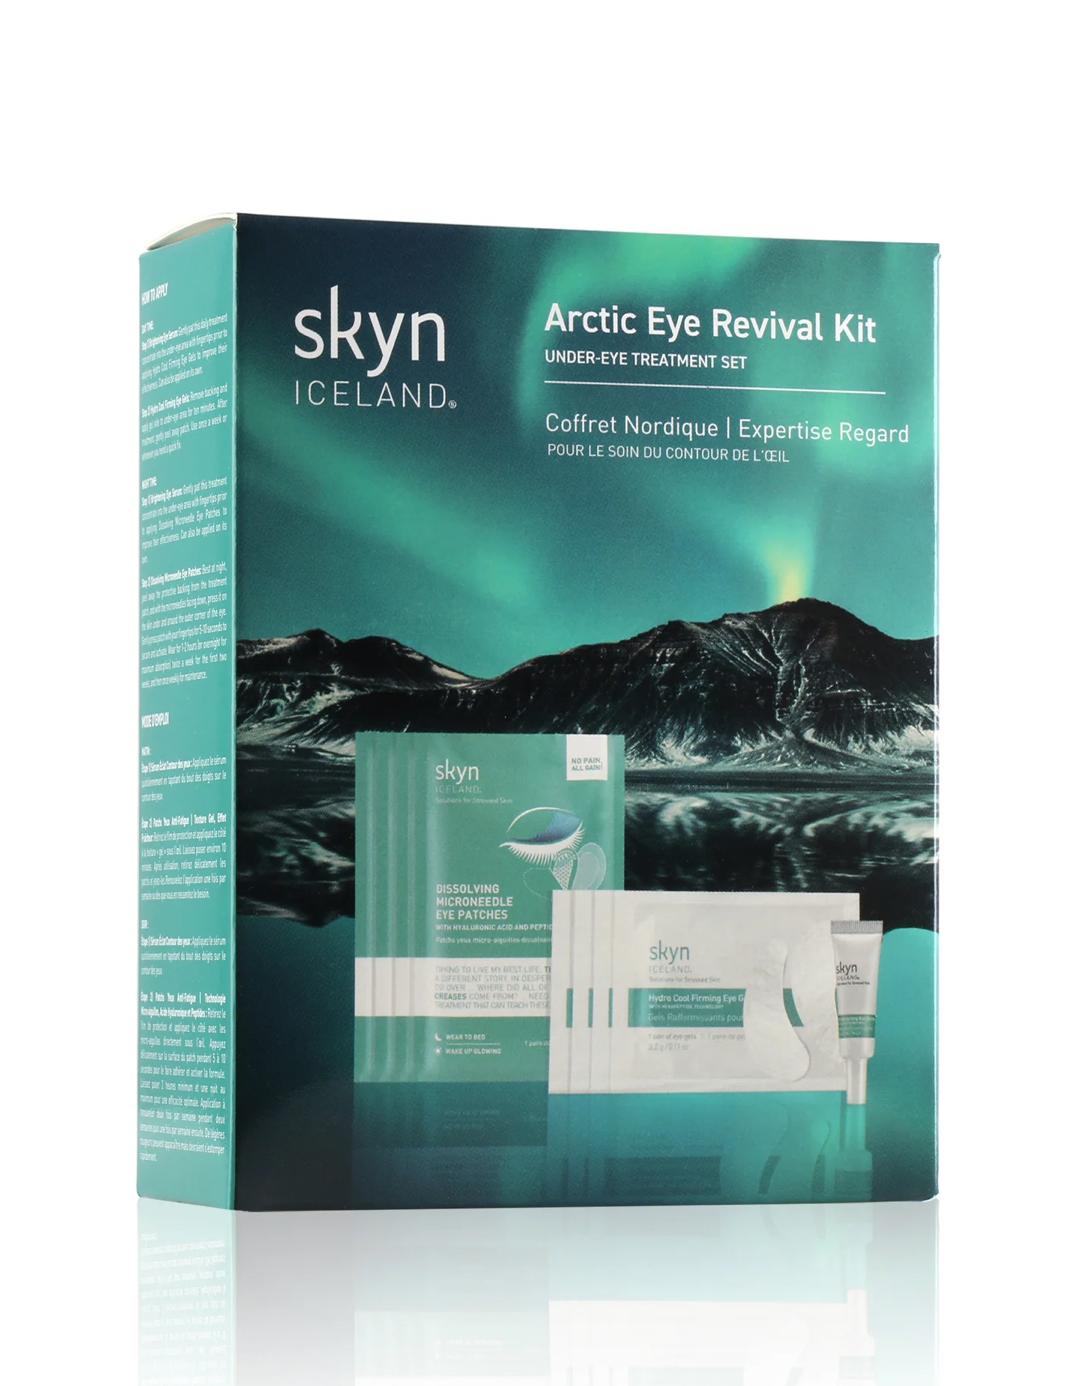 Skyn ICELAND Arctic Eye Revival Kit - интернет-магазин профессиональной косметики Spadream, изображение 54717